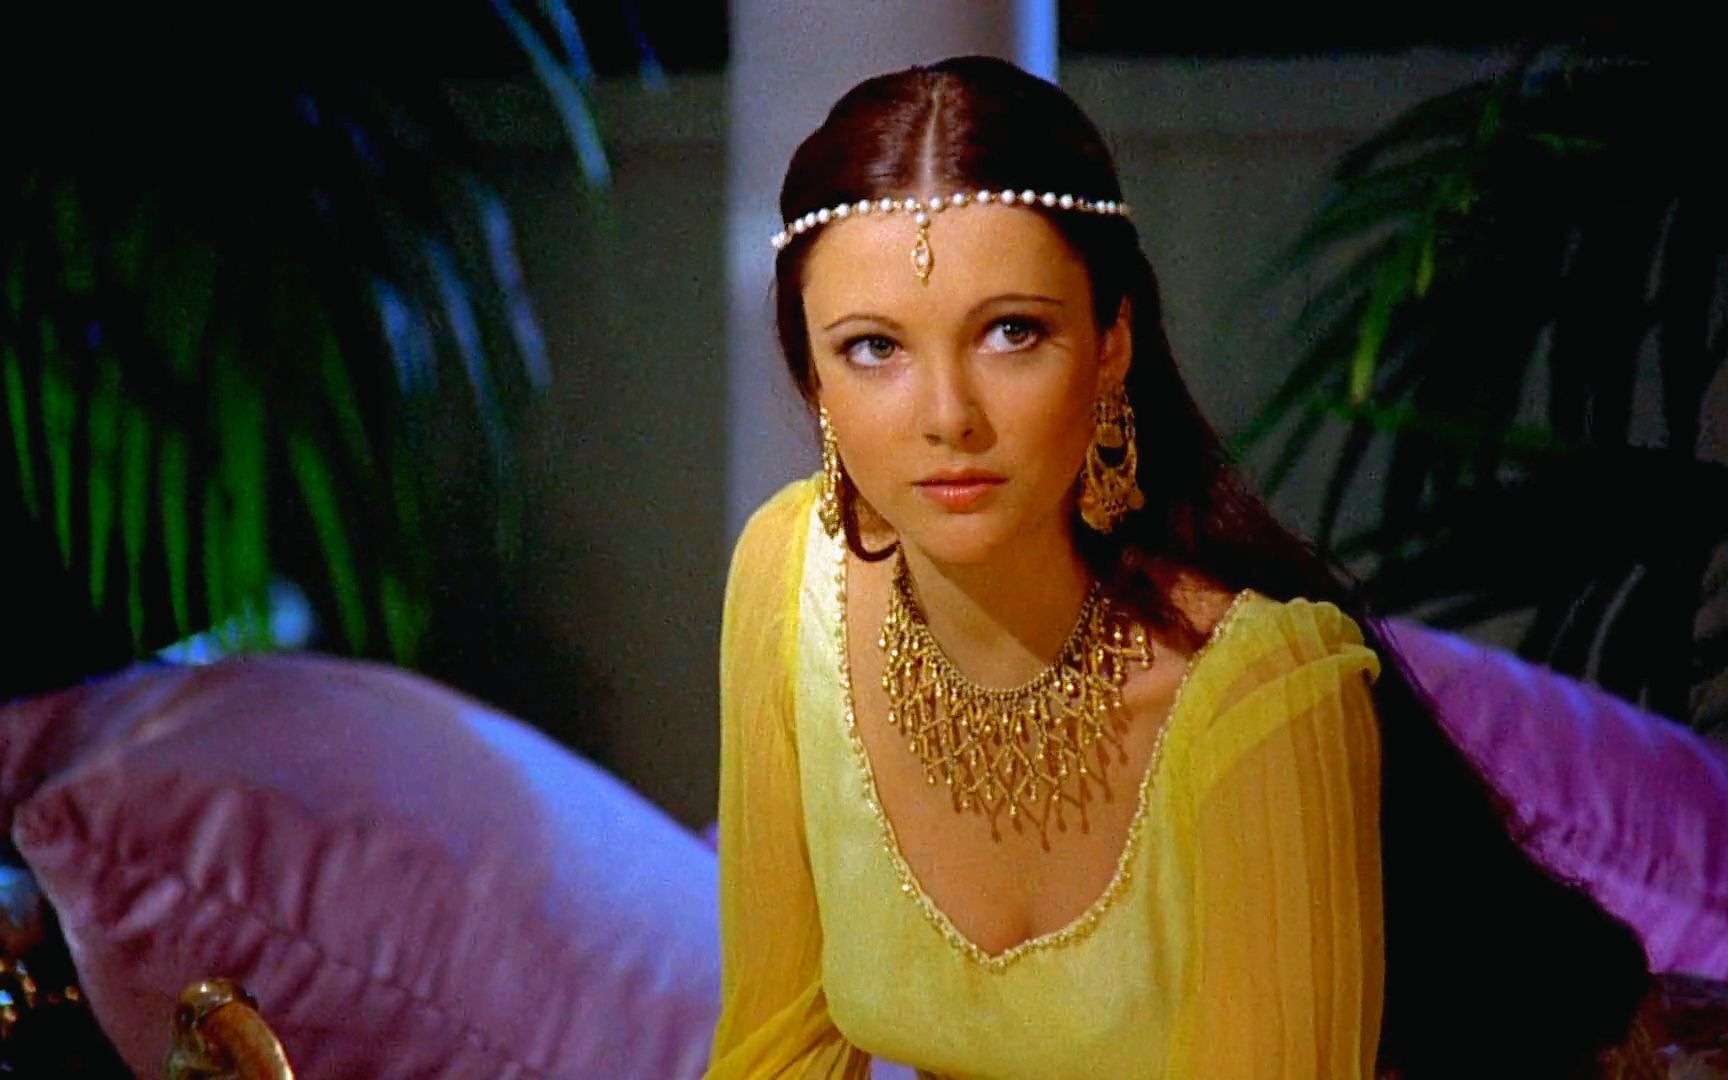 异域风情拉满!1966年的电影天方夜谭的阿拉伯公主太明艳动人了